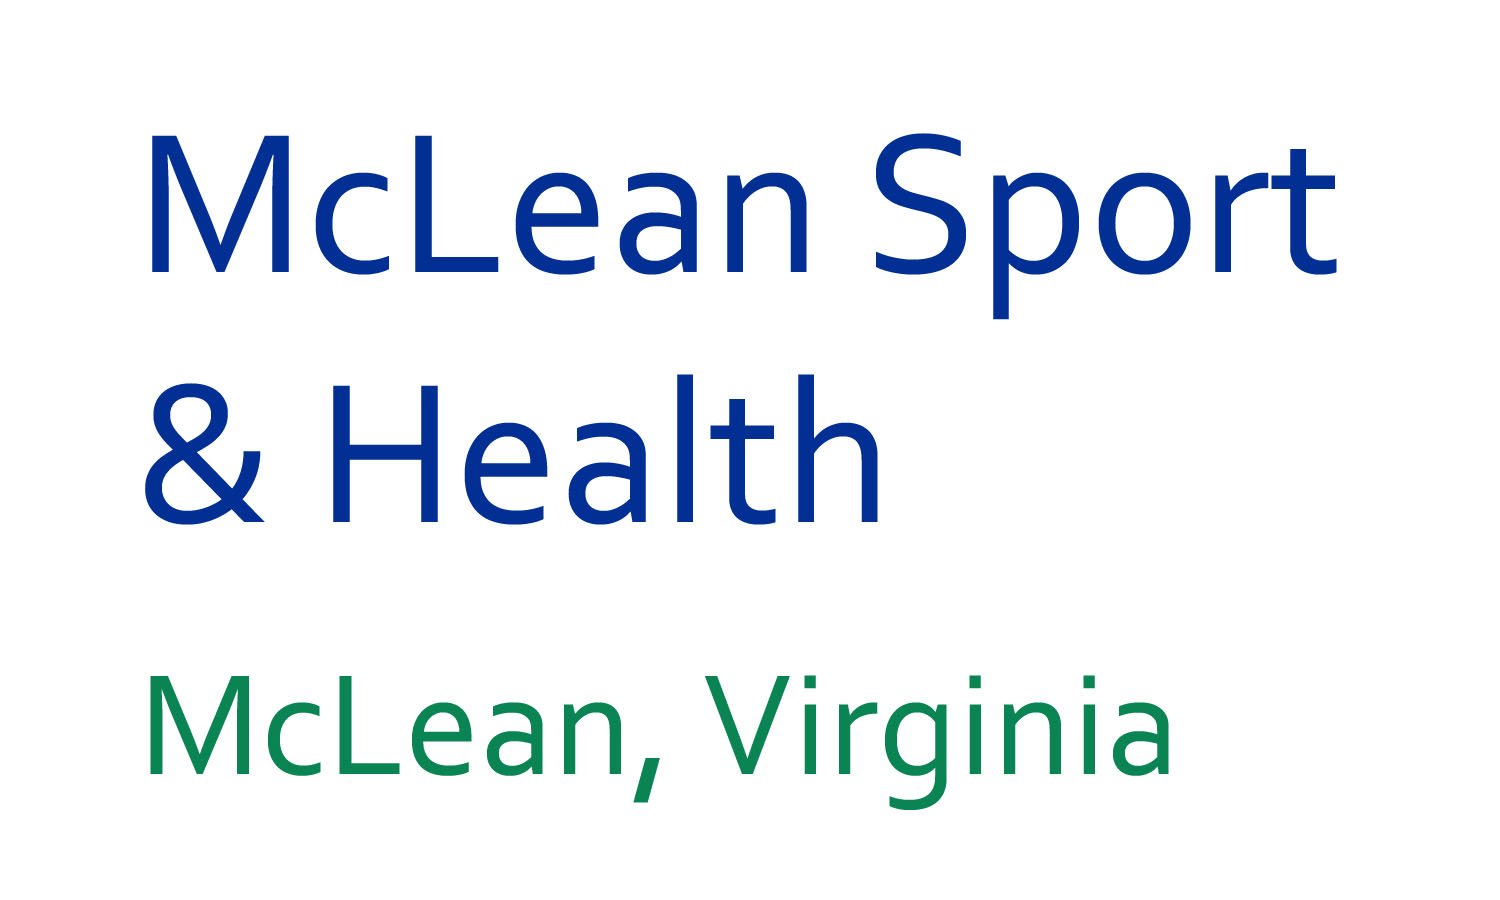 McLean Sport & Health